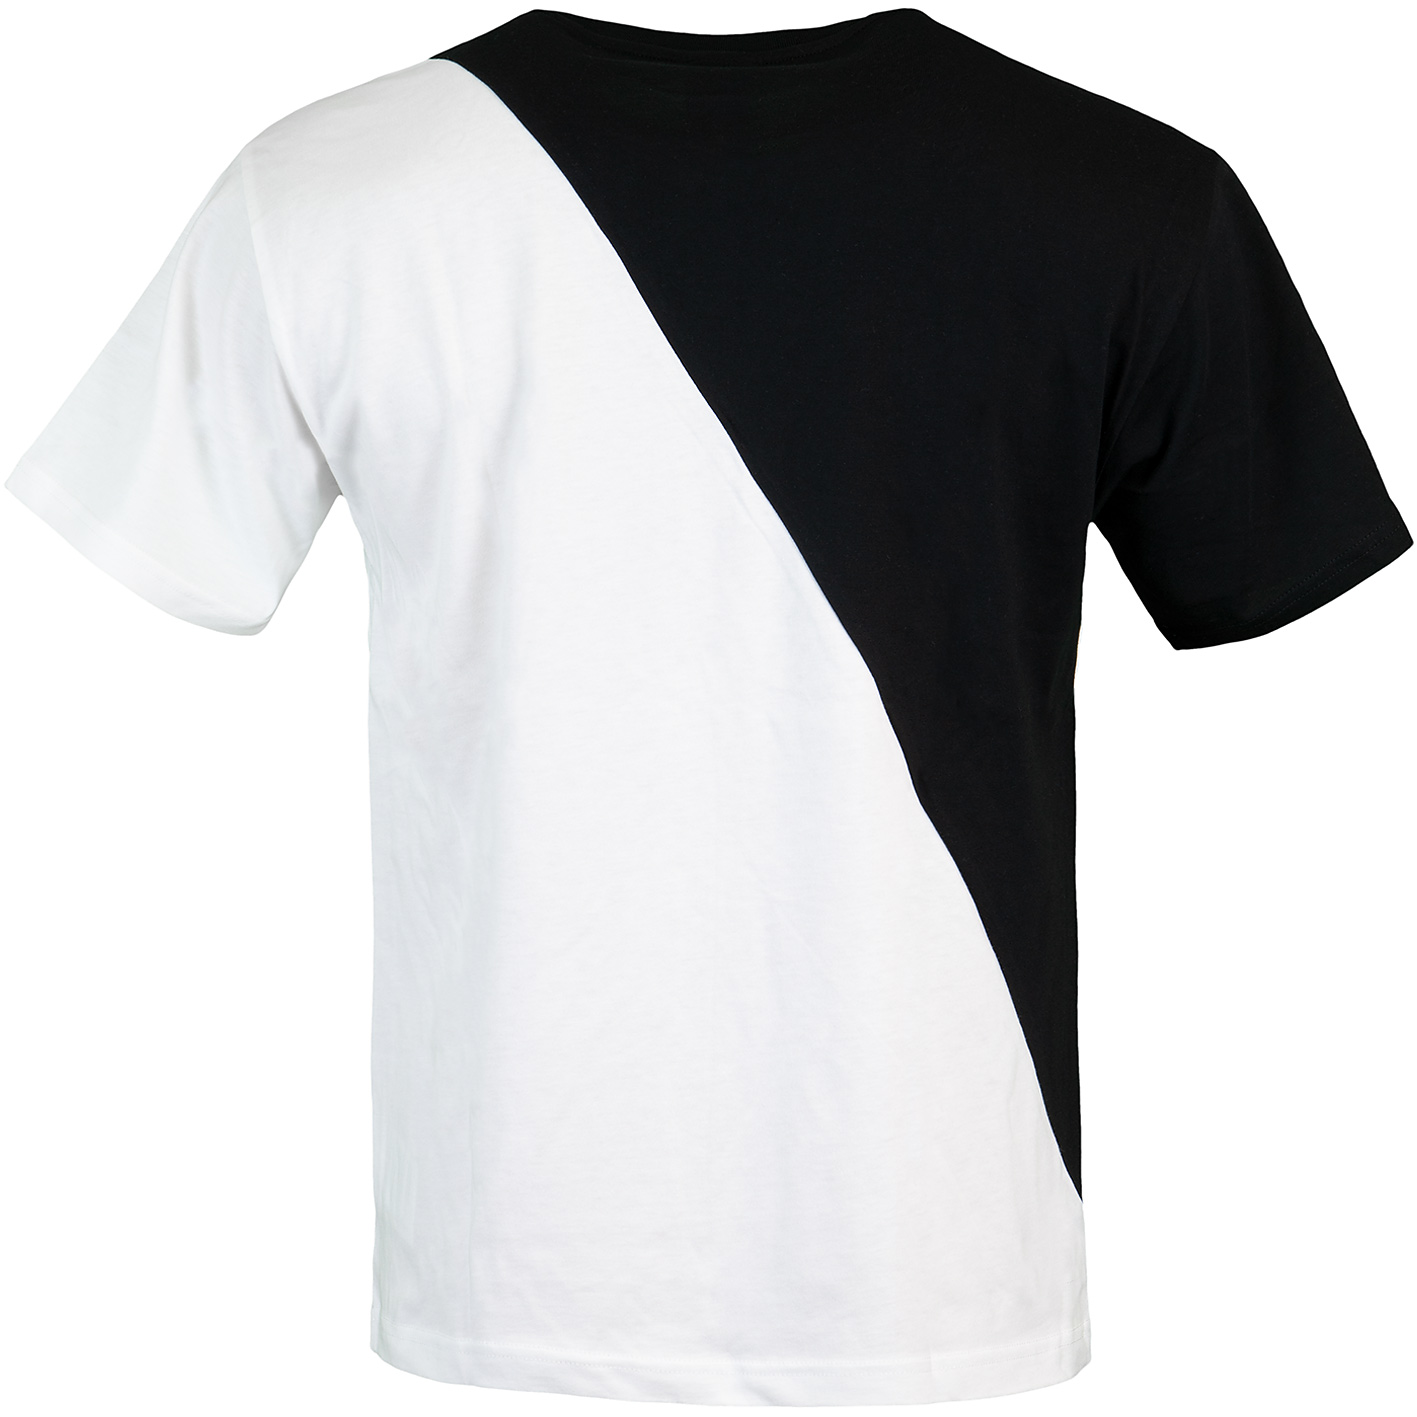 ☆ New Balance Splice T-Shirt schwarz/weiß - hier bestellen!